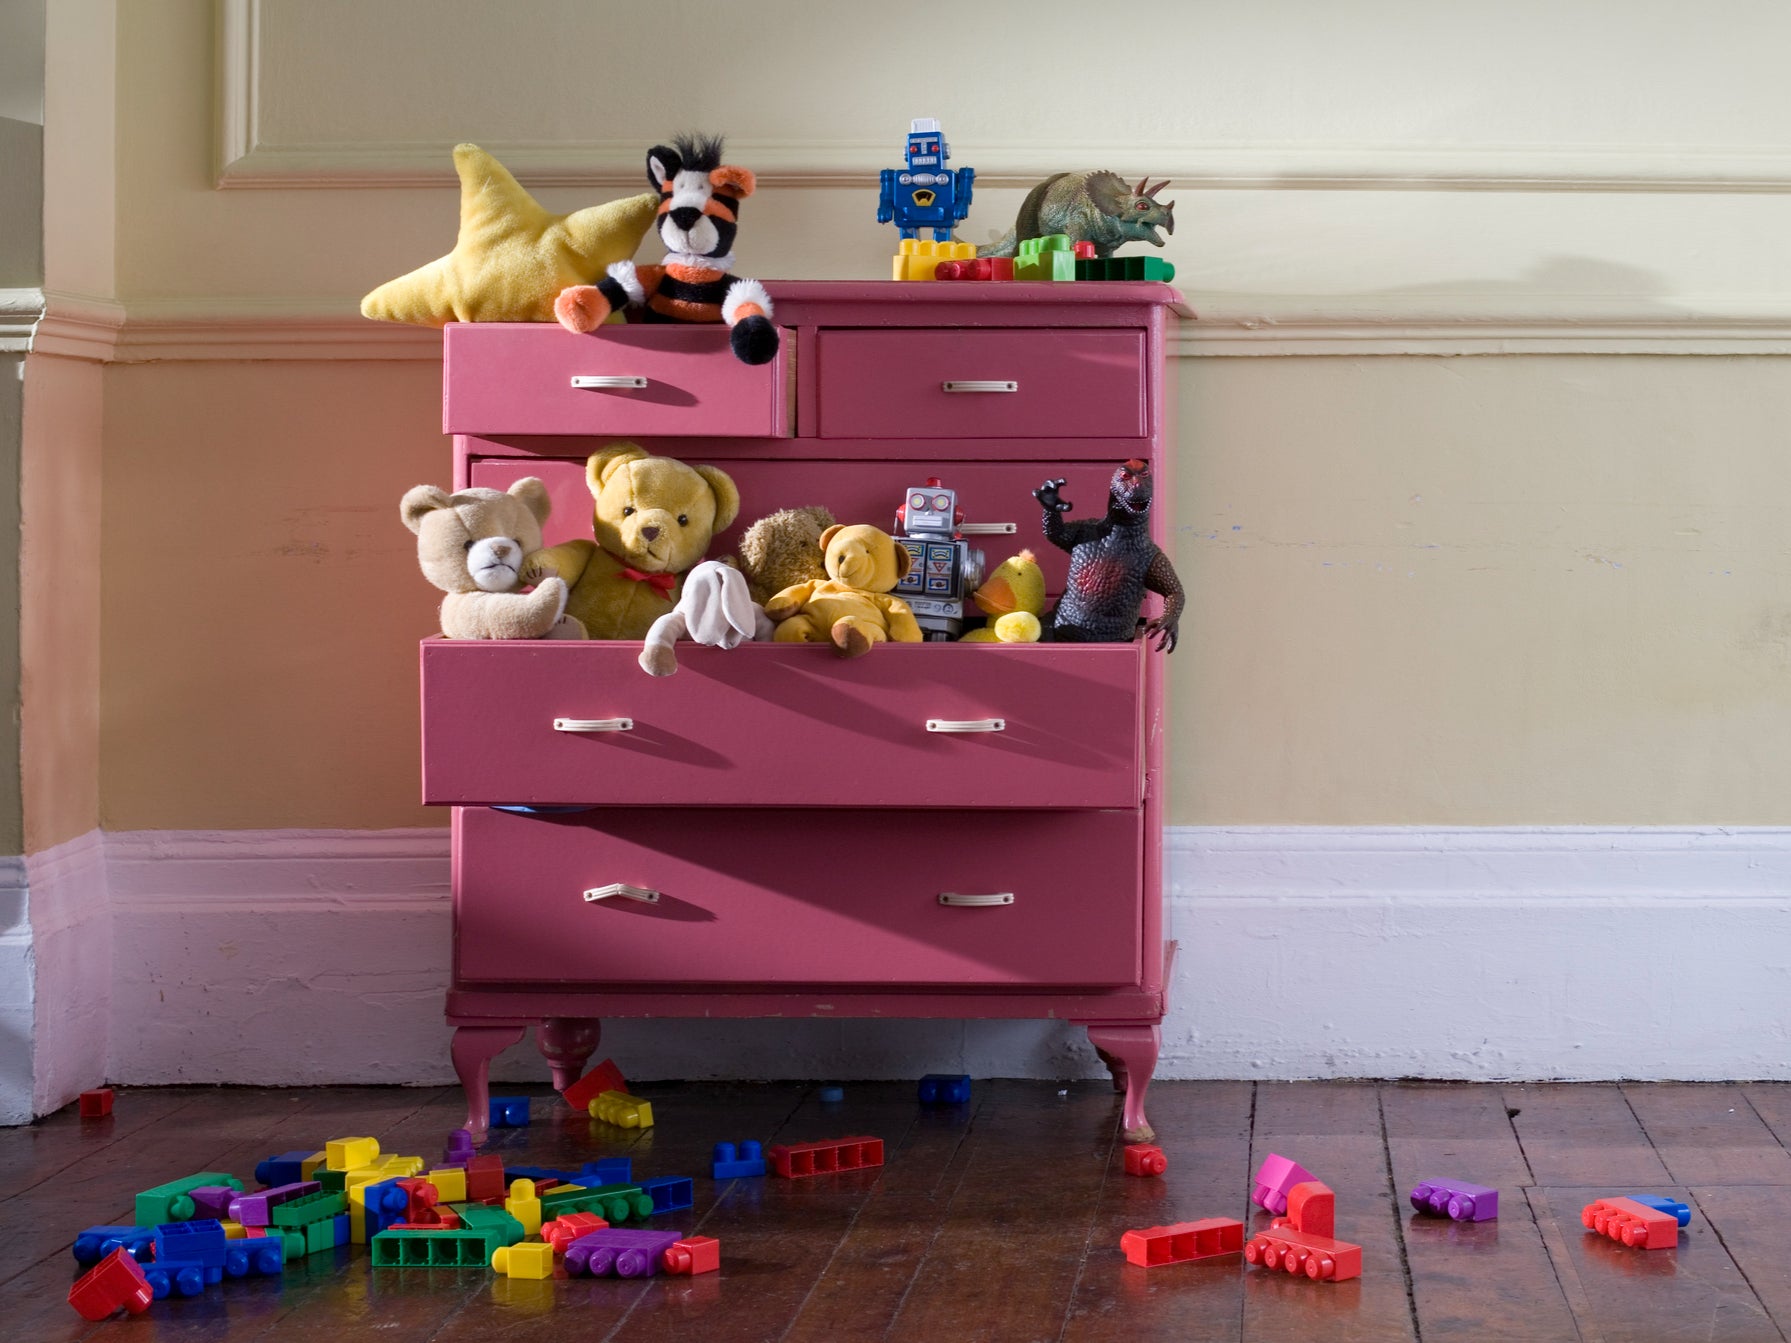 Baúl de juguetes para niños con juguetes de peluche y bloques de construcción.